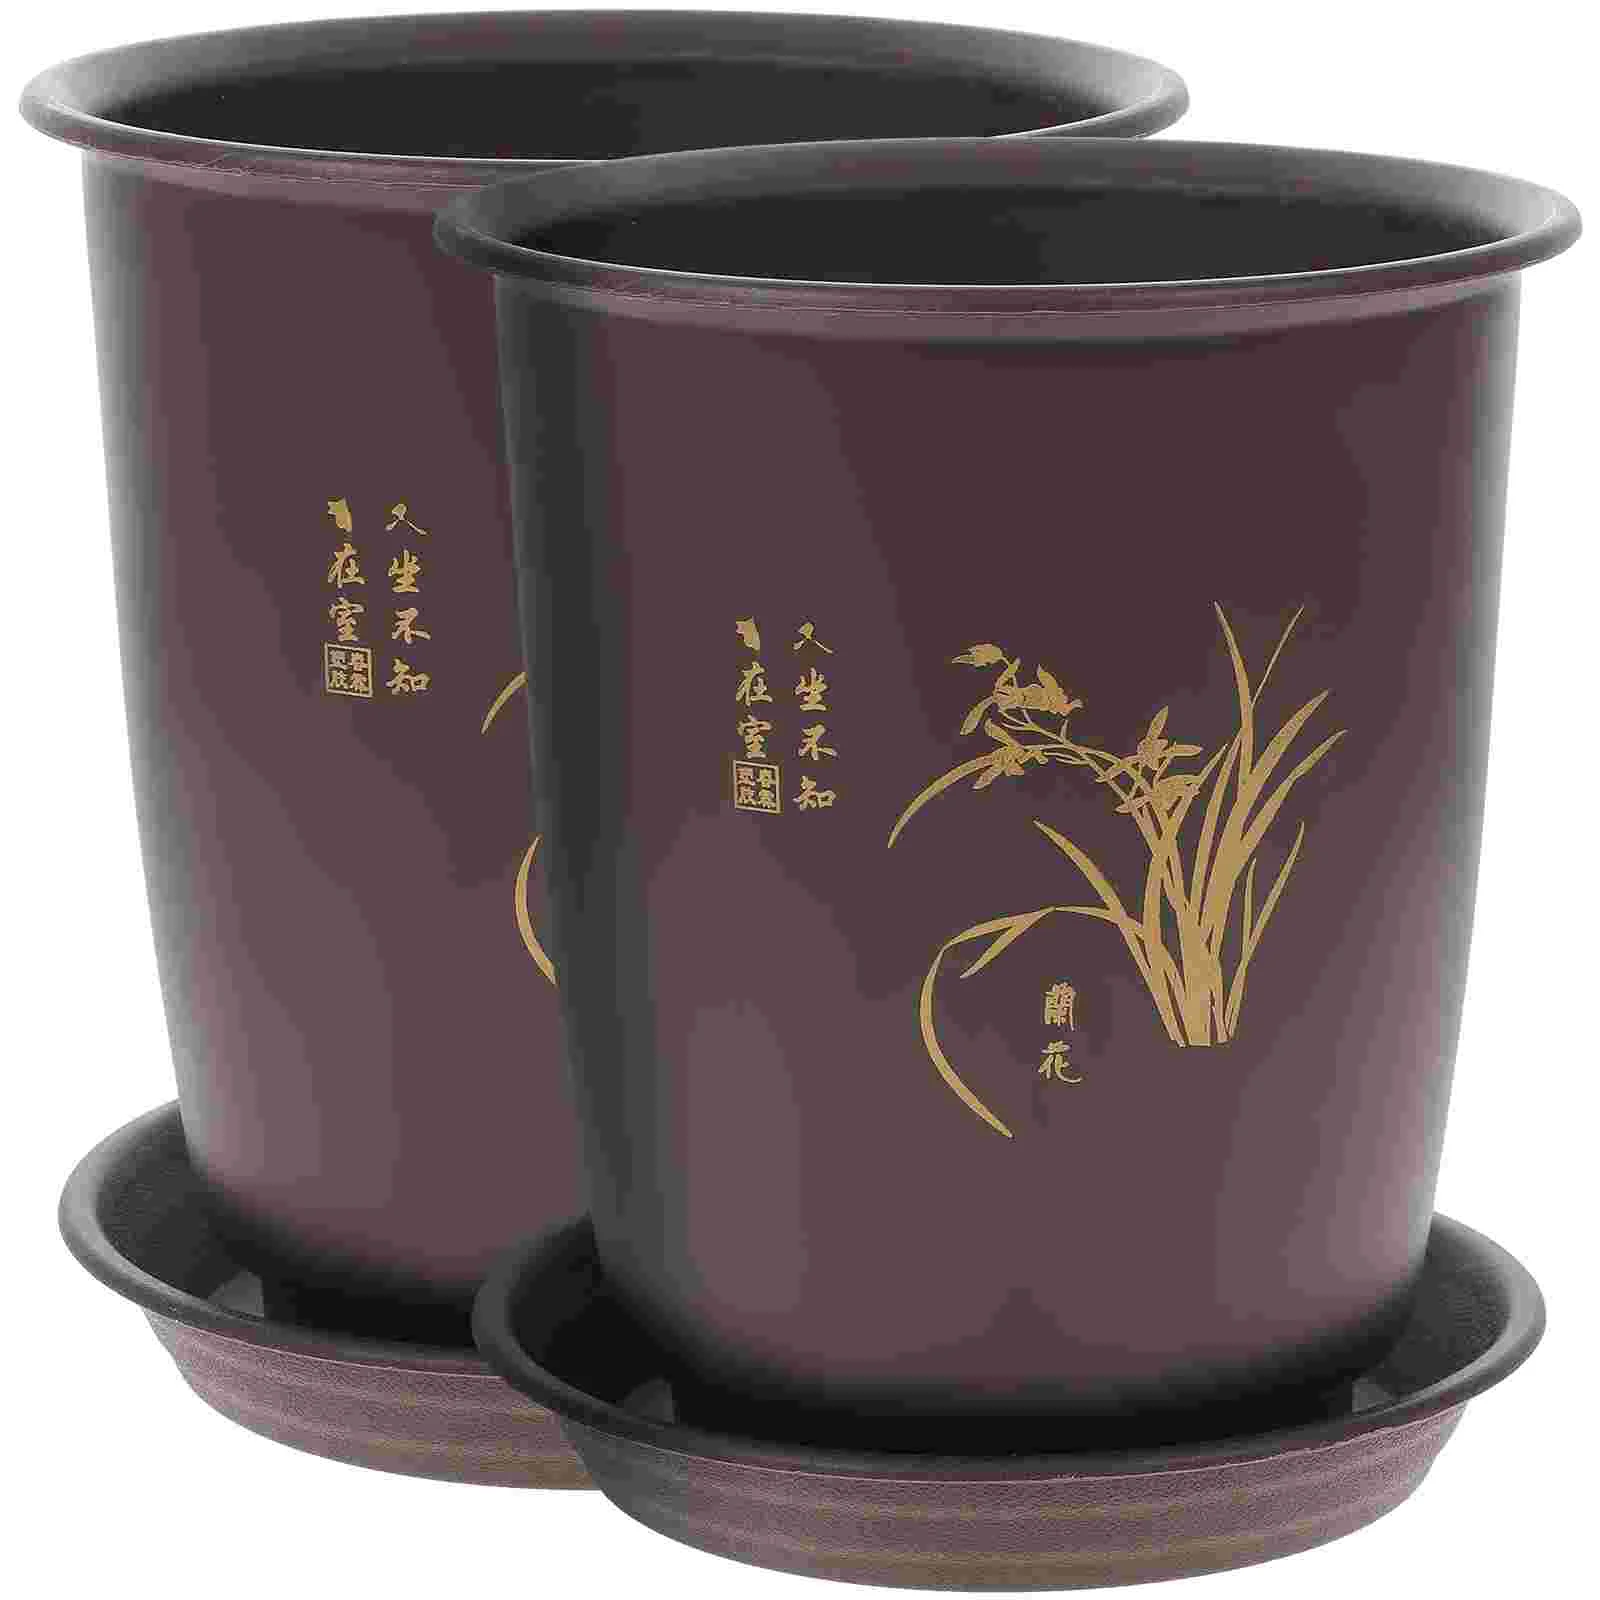 

Orchid Pot Plastic Imitation Porcelain Flowerpot Planter with Trays